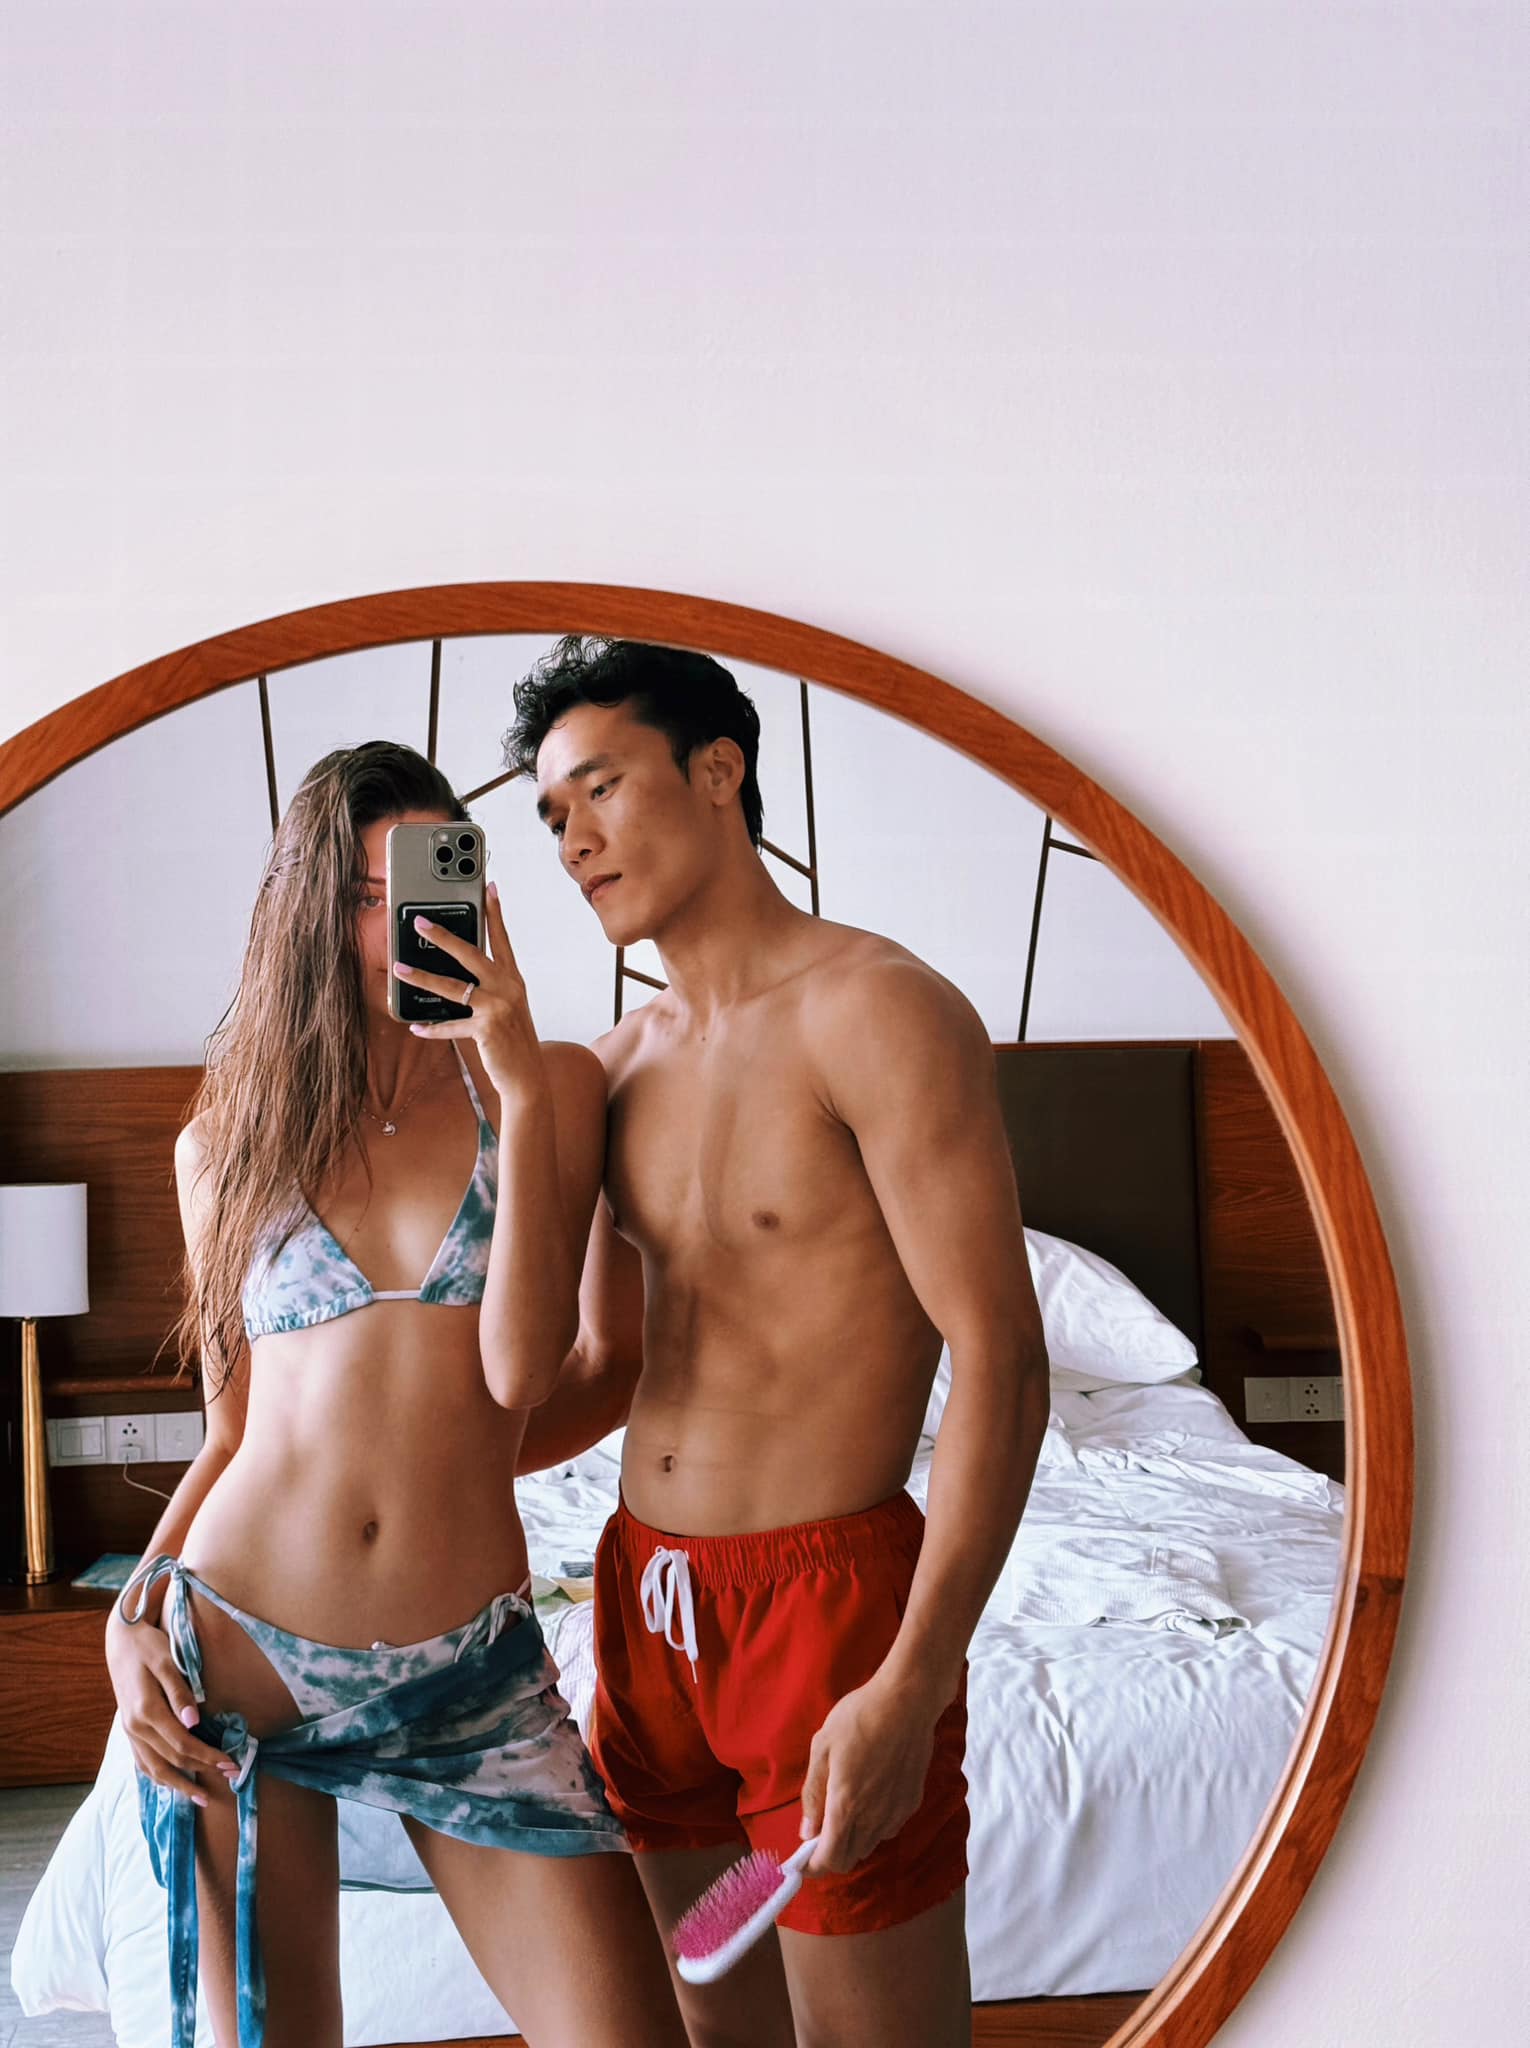 Dianka Zakhidova đăng ảnh hot của hai vợ chồng khi chụp qua gương